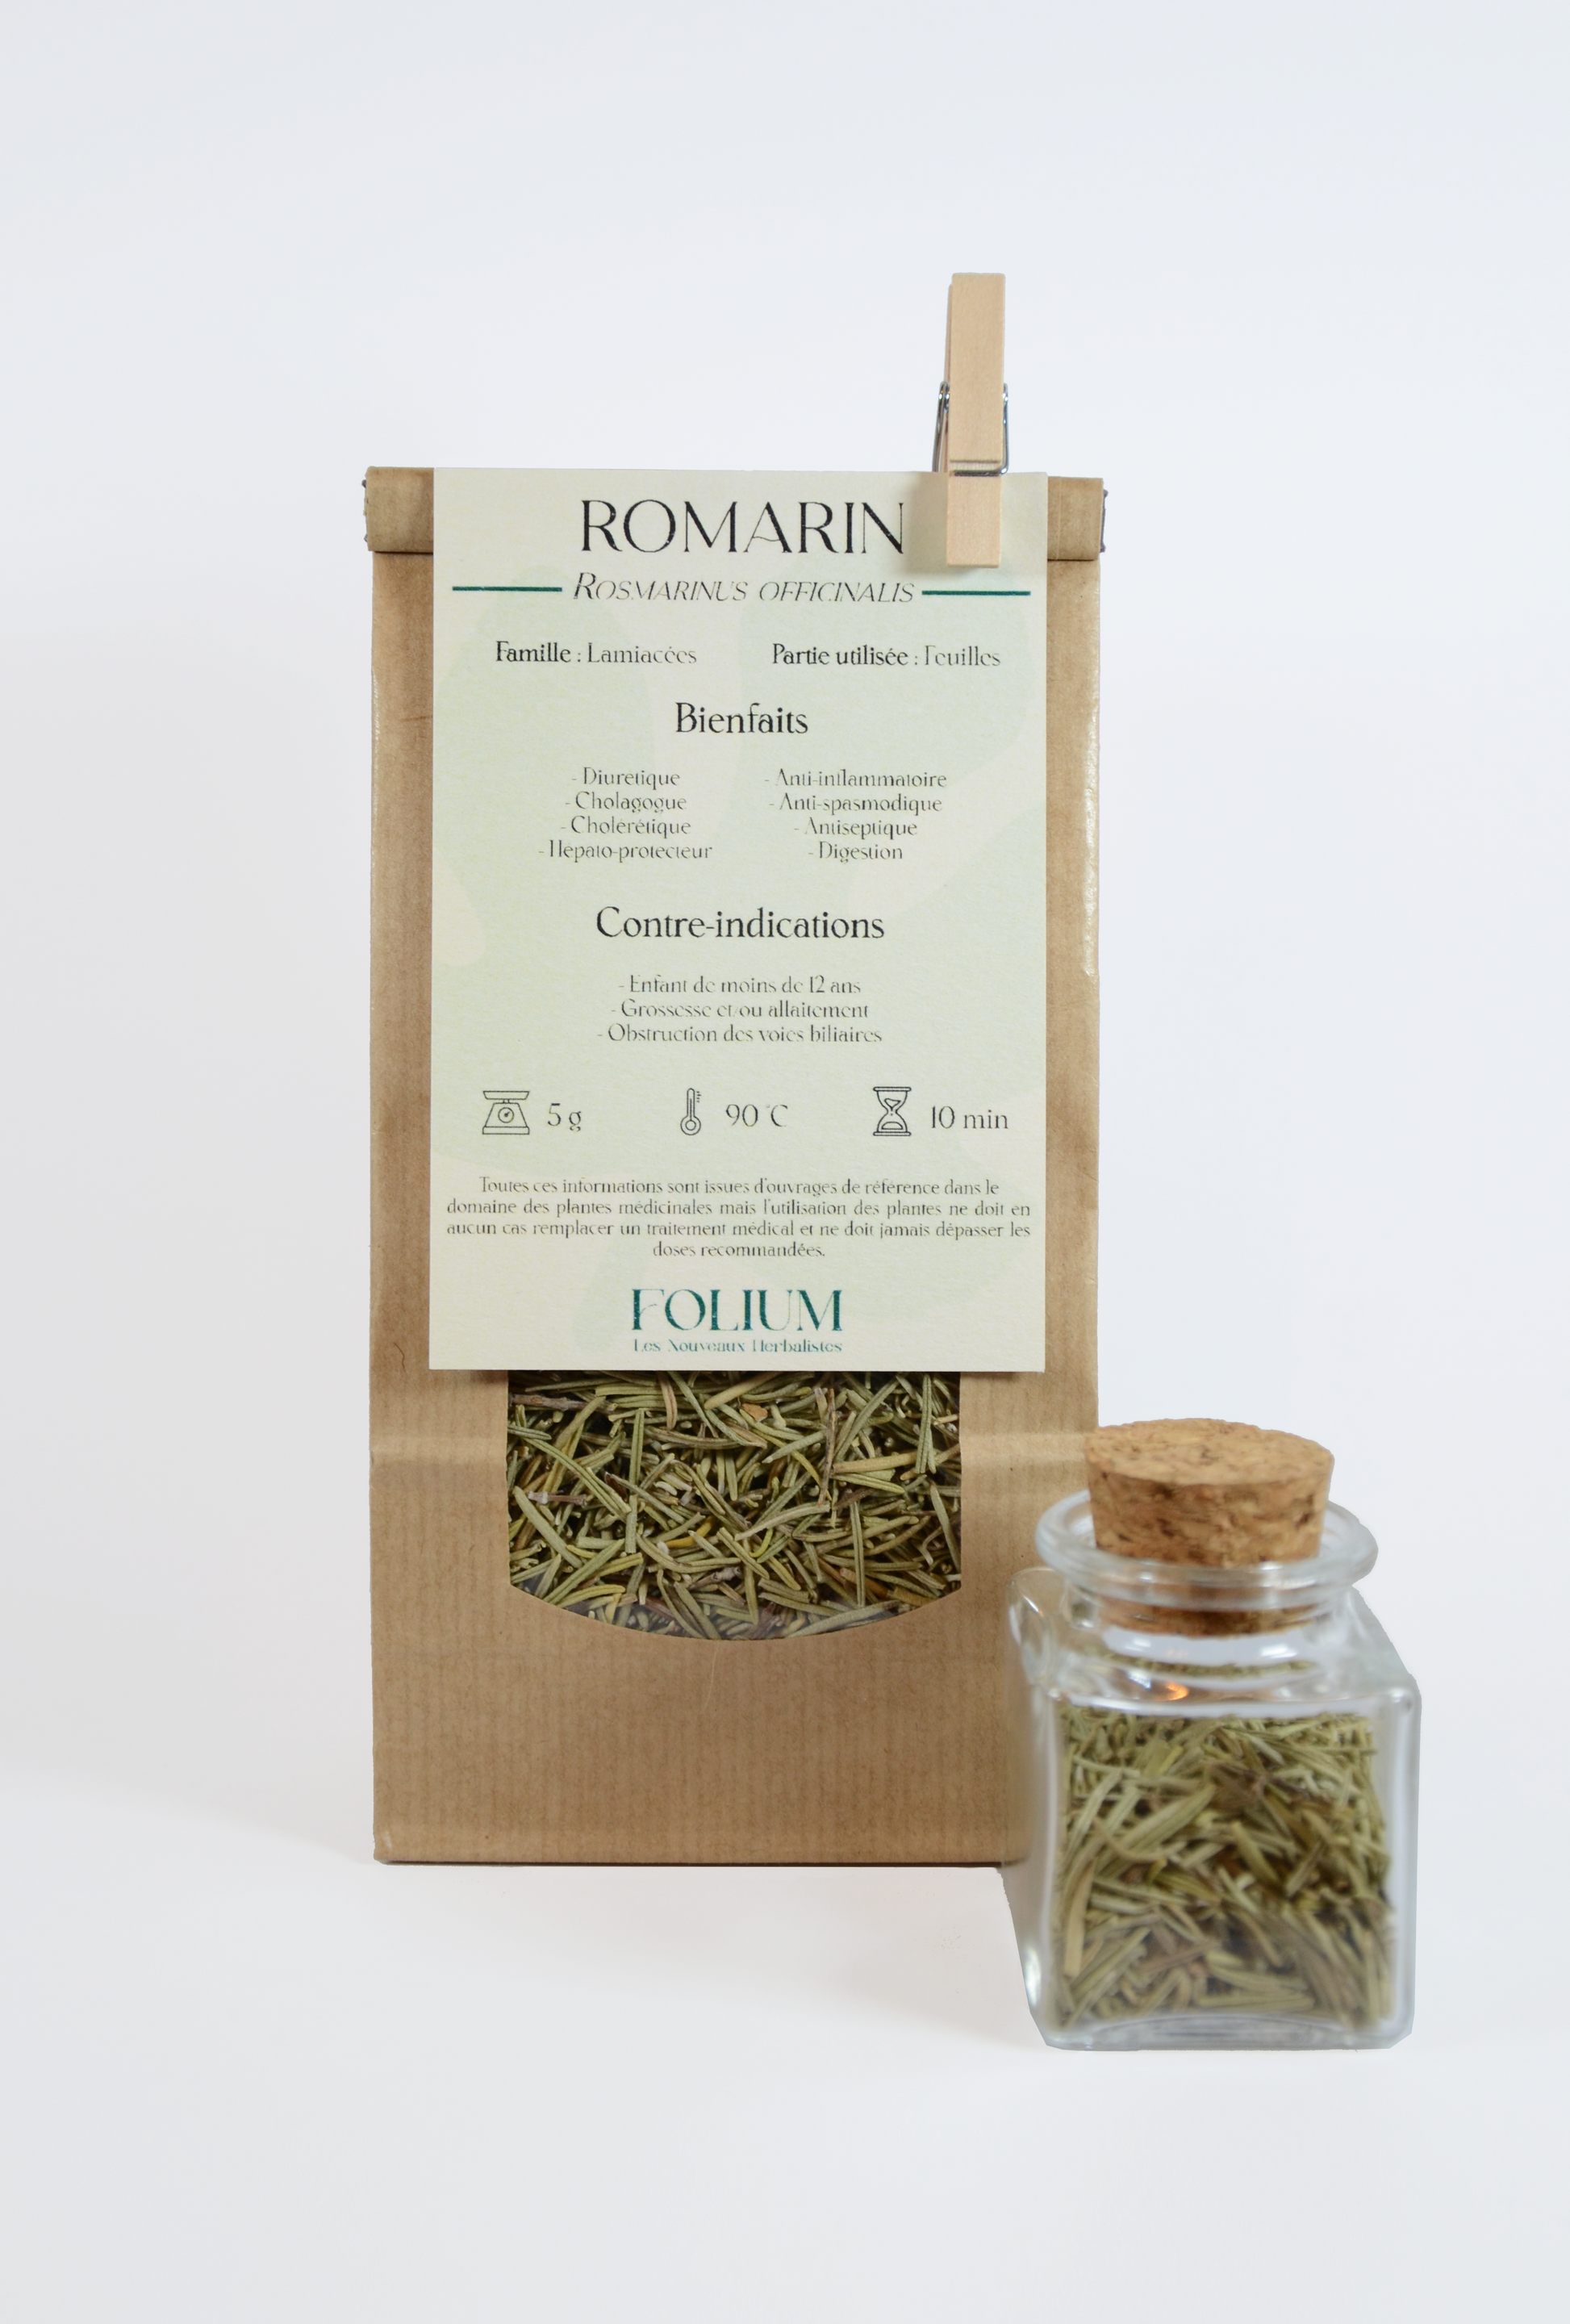 Romarin BIO de l'Herboristerie FOLIUM - Les Nouveaux Herbalistes